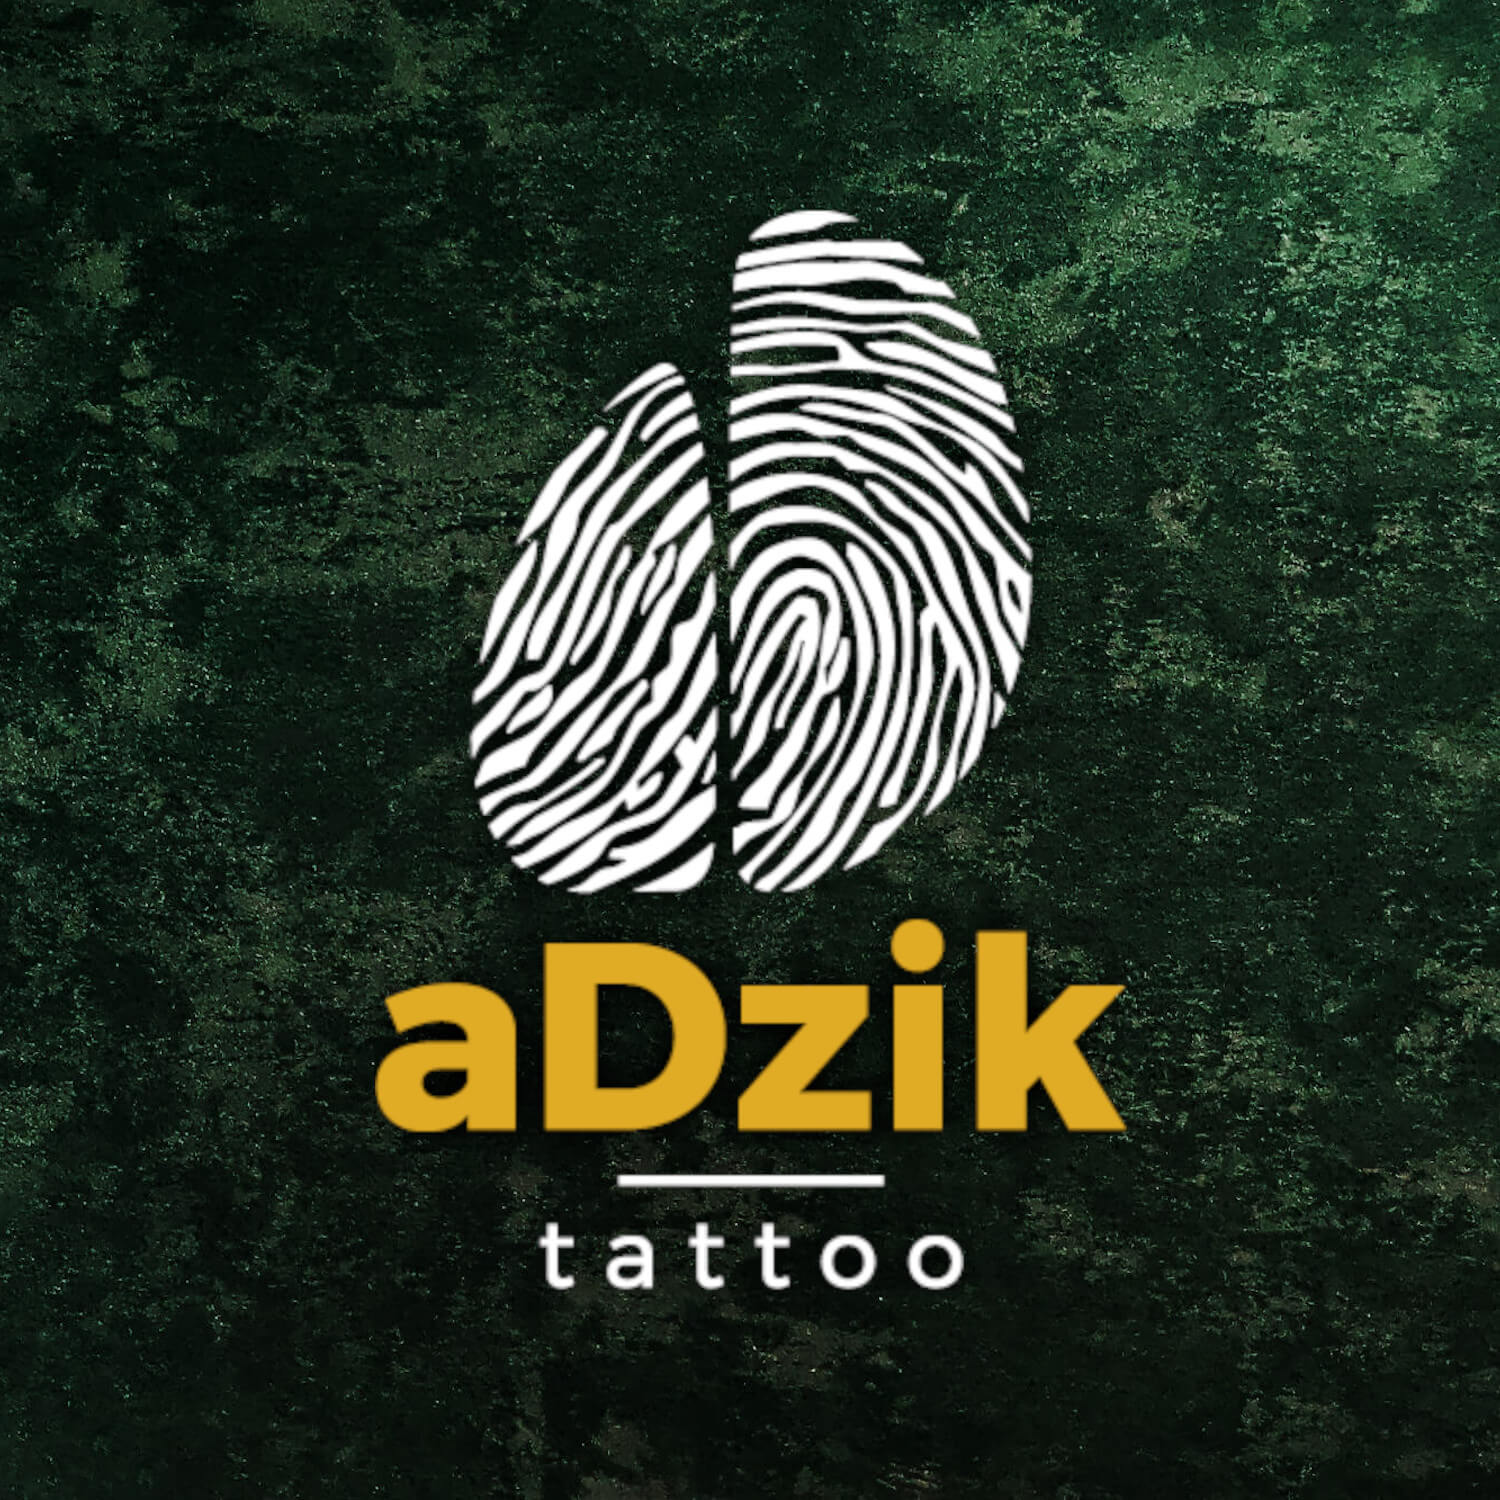 tattoo tatuaż Leszno aDzik blog